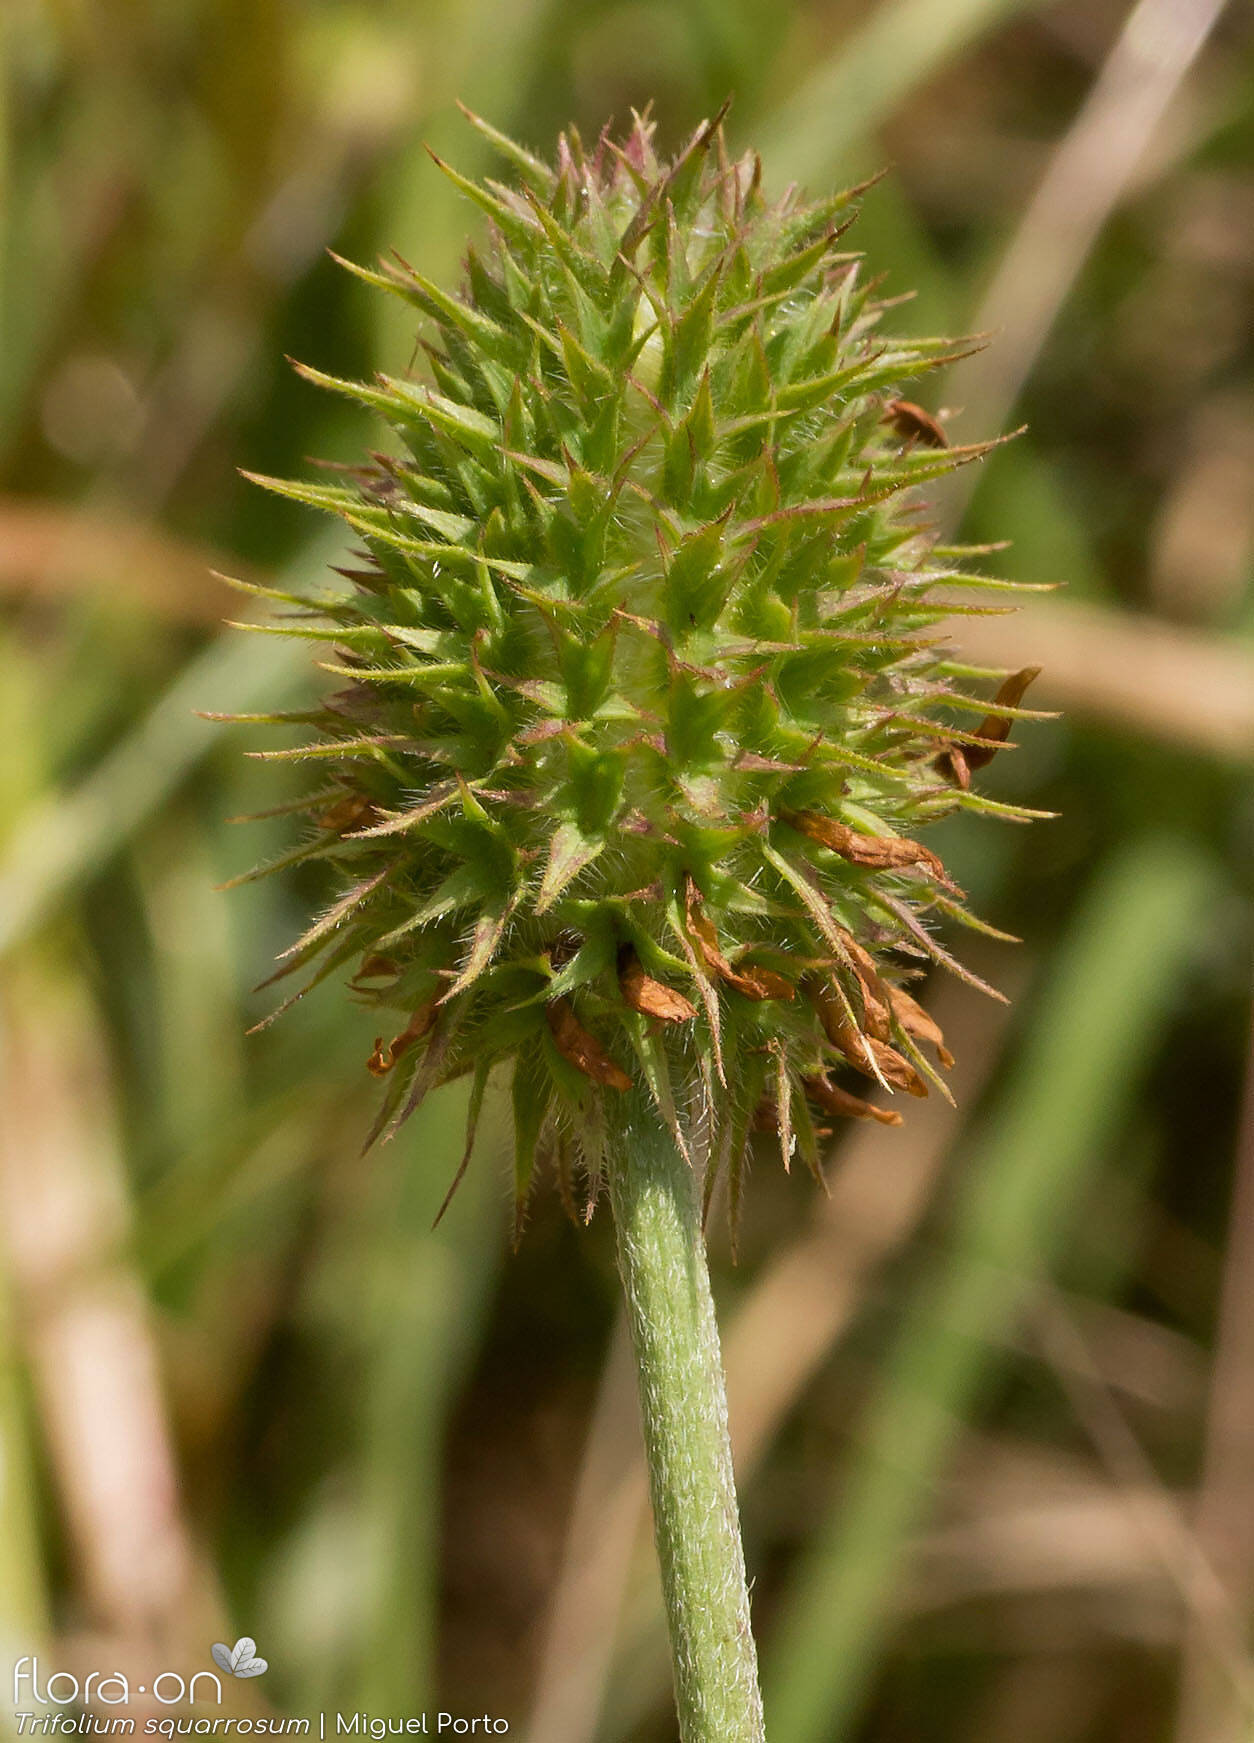 Trifolium squarrosum - Flor (geral) | Miguel Porto; CC BY-NC 4.0